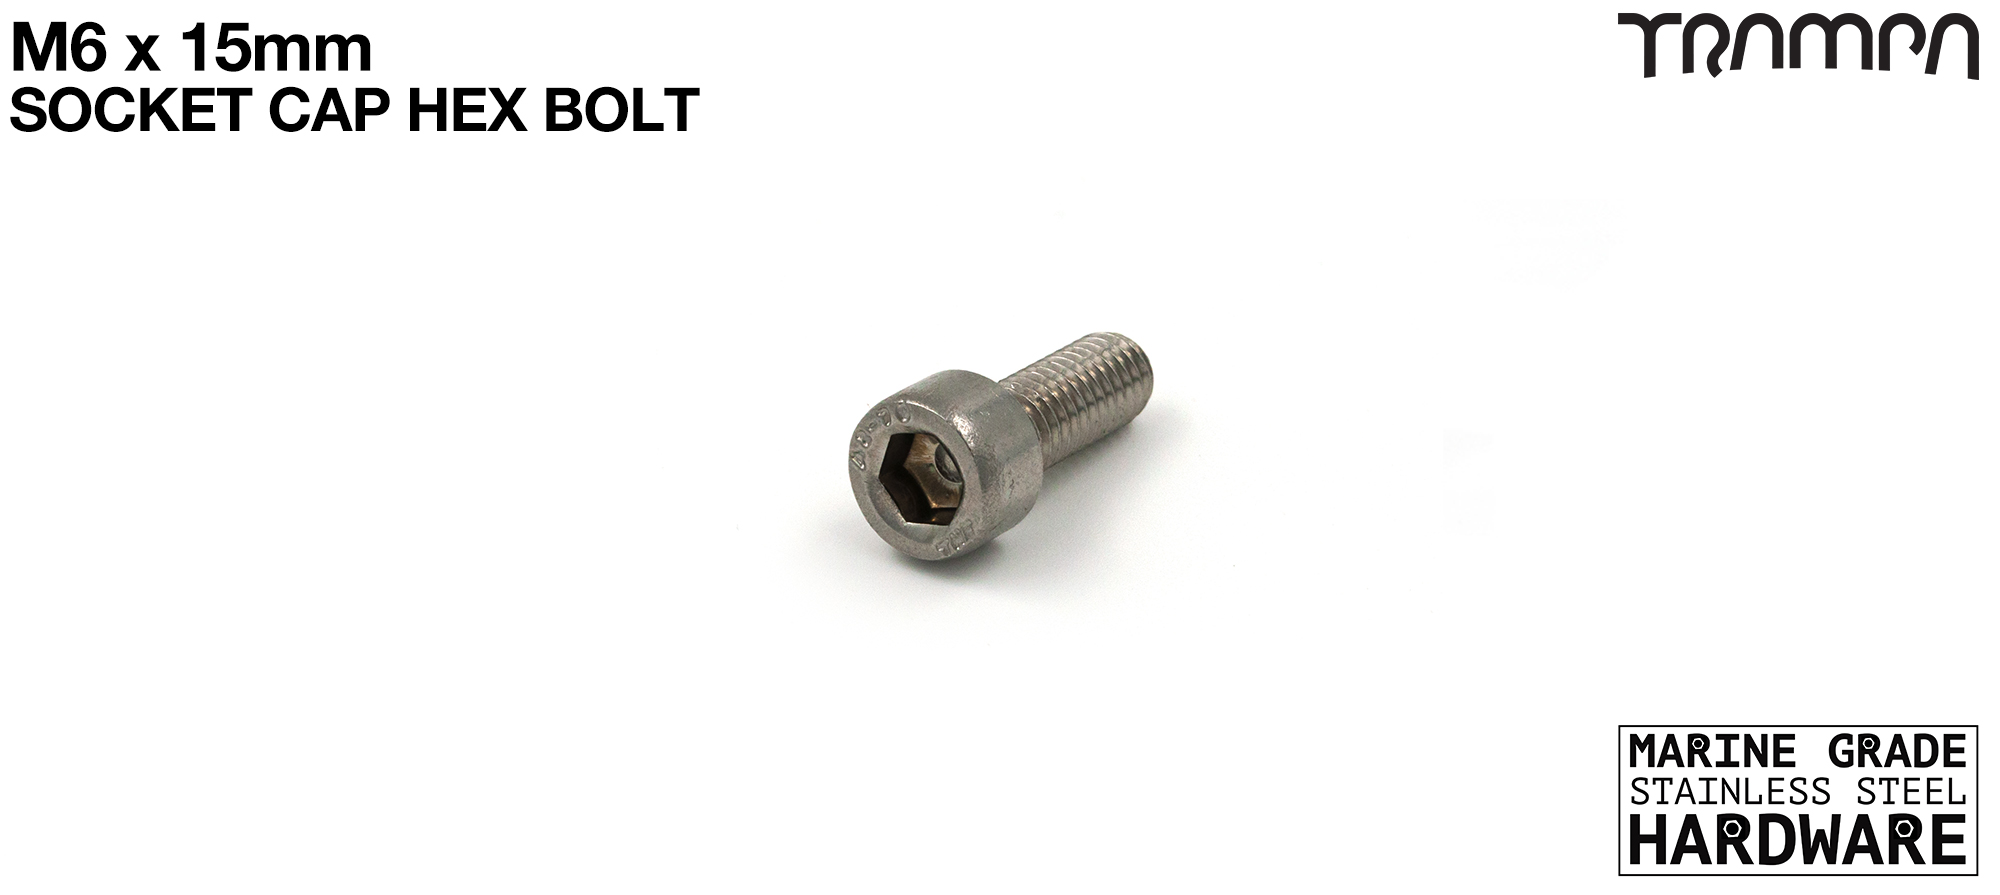 M6 x 15mm Socket Capped Allen-Key Bolt 